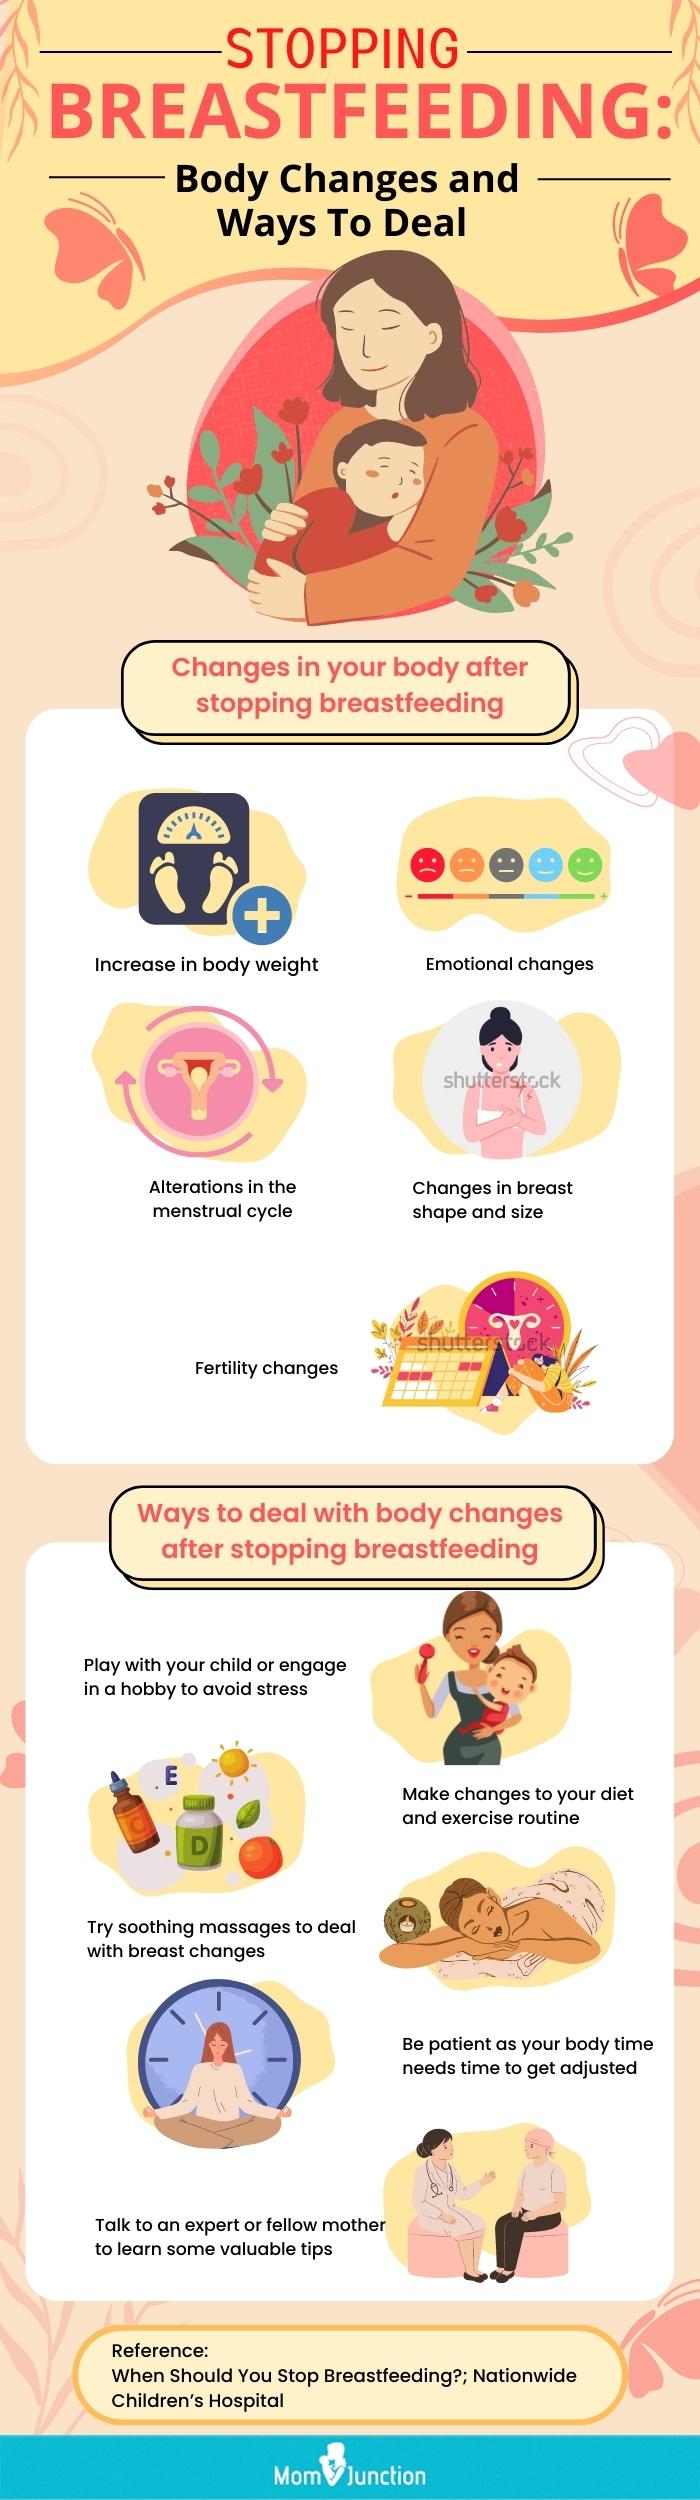 停止母乳喂养身体变化及处理方法(信息图)